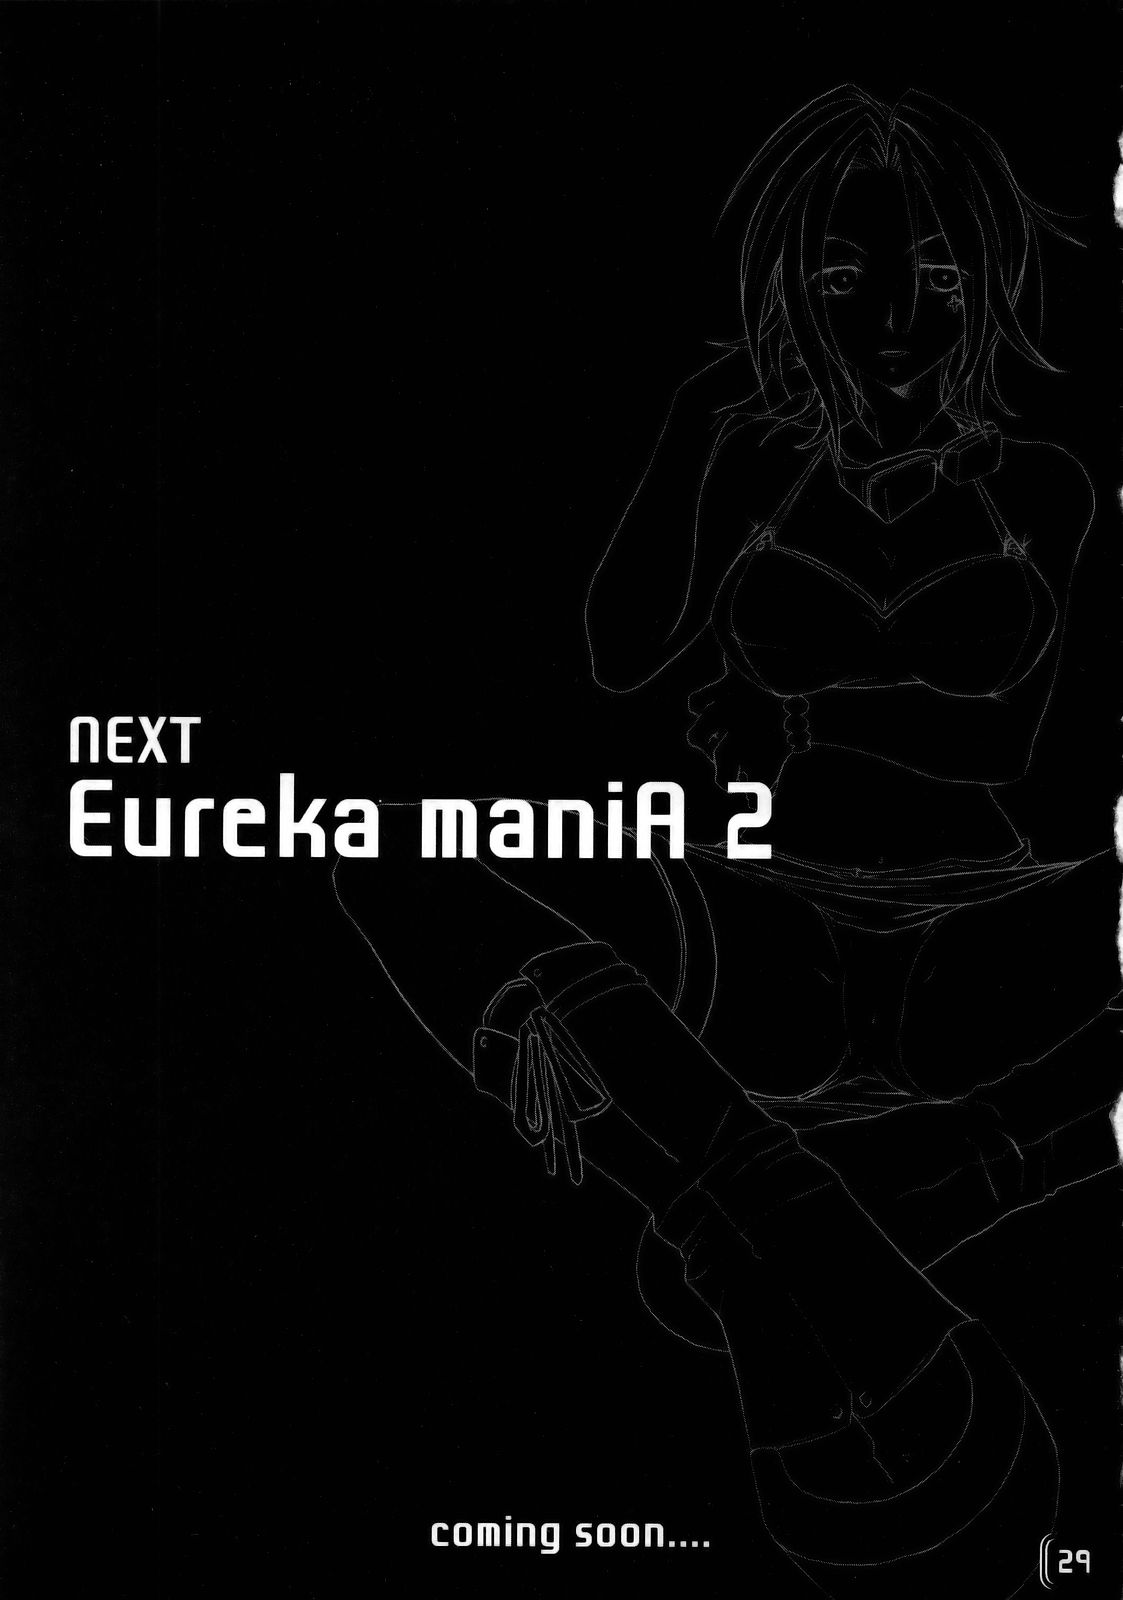 [触手戦隊 (蒼井みりん, 黒葉)] Eureka maniA 1 (交響詩篇エウレカセブン)